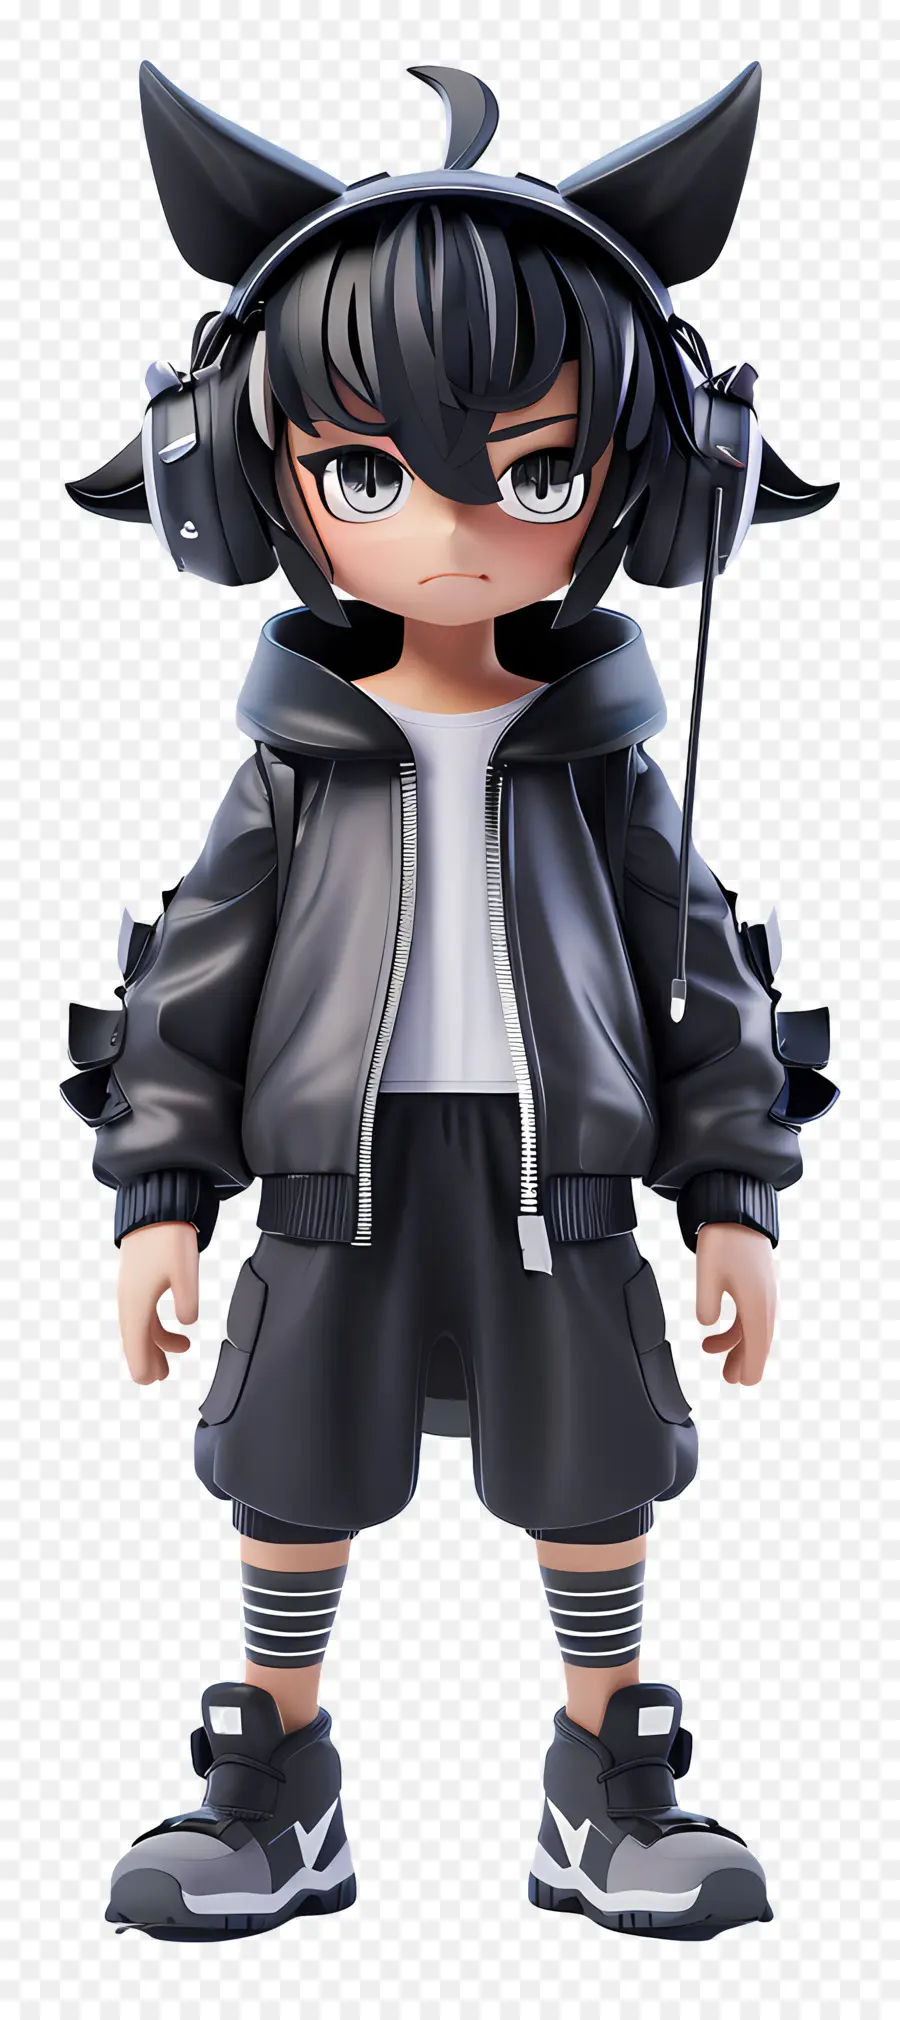 Anime -Figur modes schwarz -weißer Overall Kopfhörer langes schwarzes Haar - Person im Overall mit Kopfhörern und Sonnenbrillen